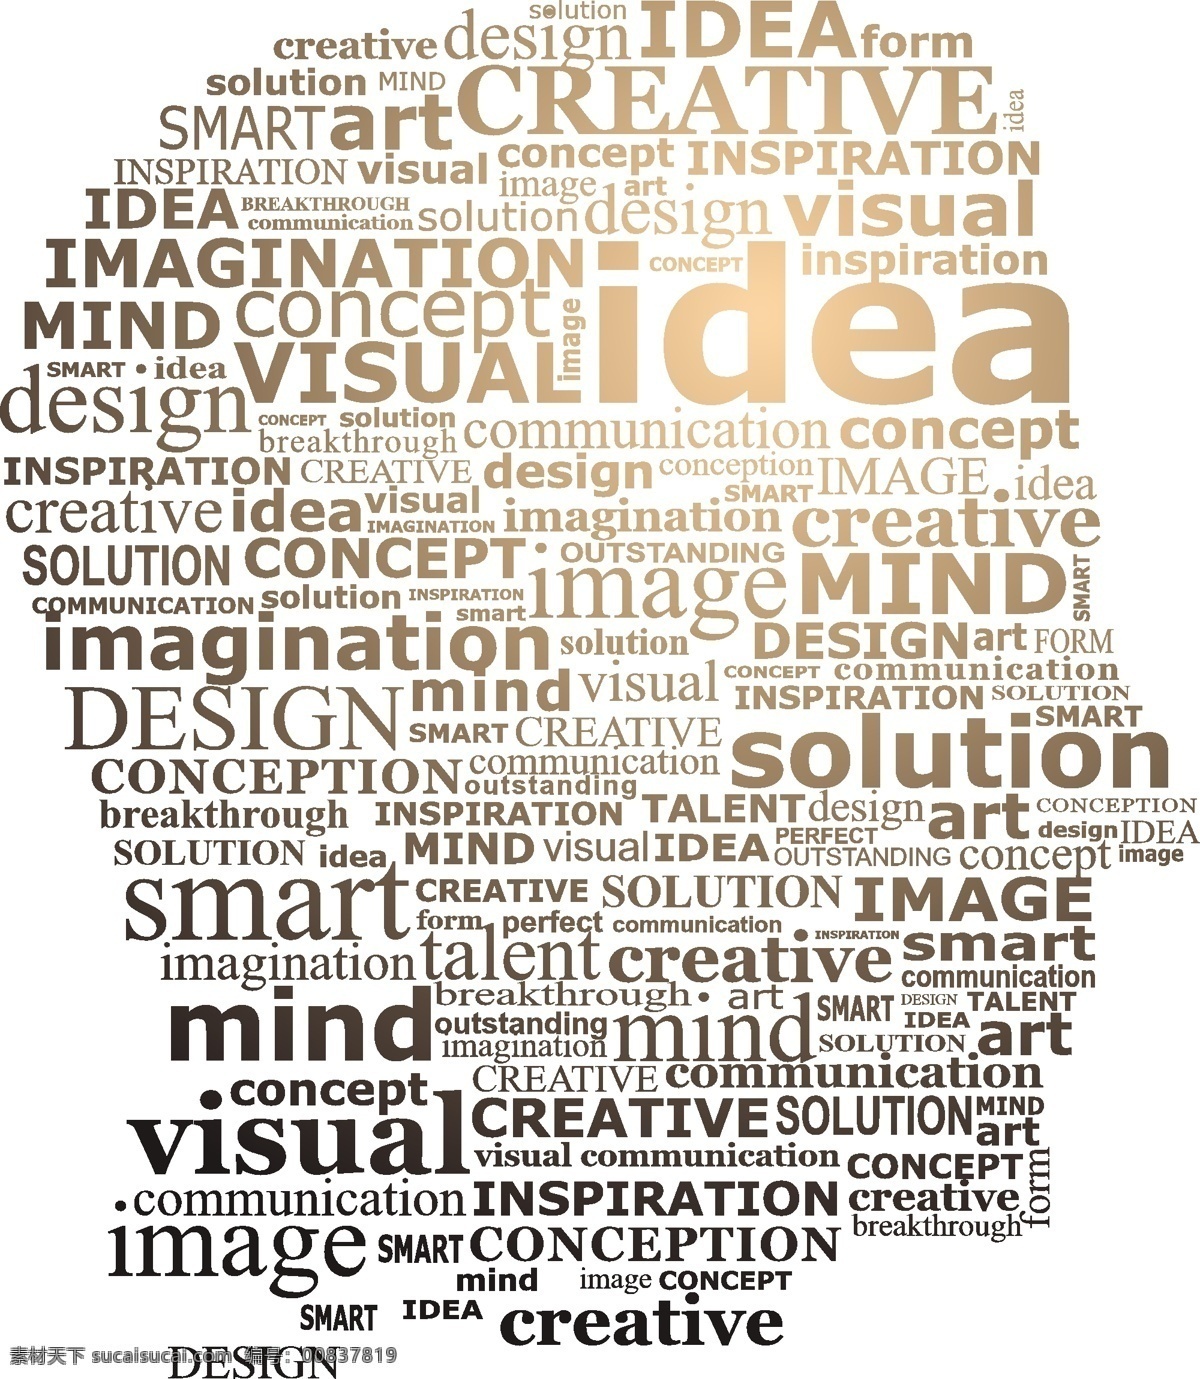 大脑创意思维 大脑 创意思维 创新思维 生活百科 矢量素材 白色